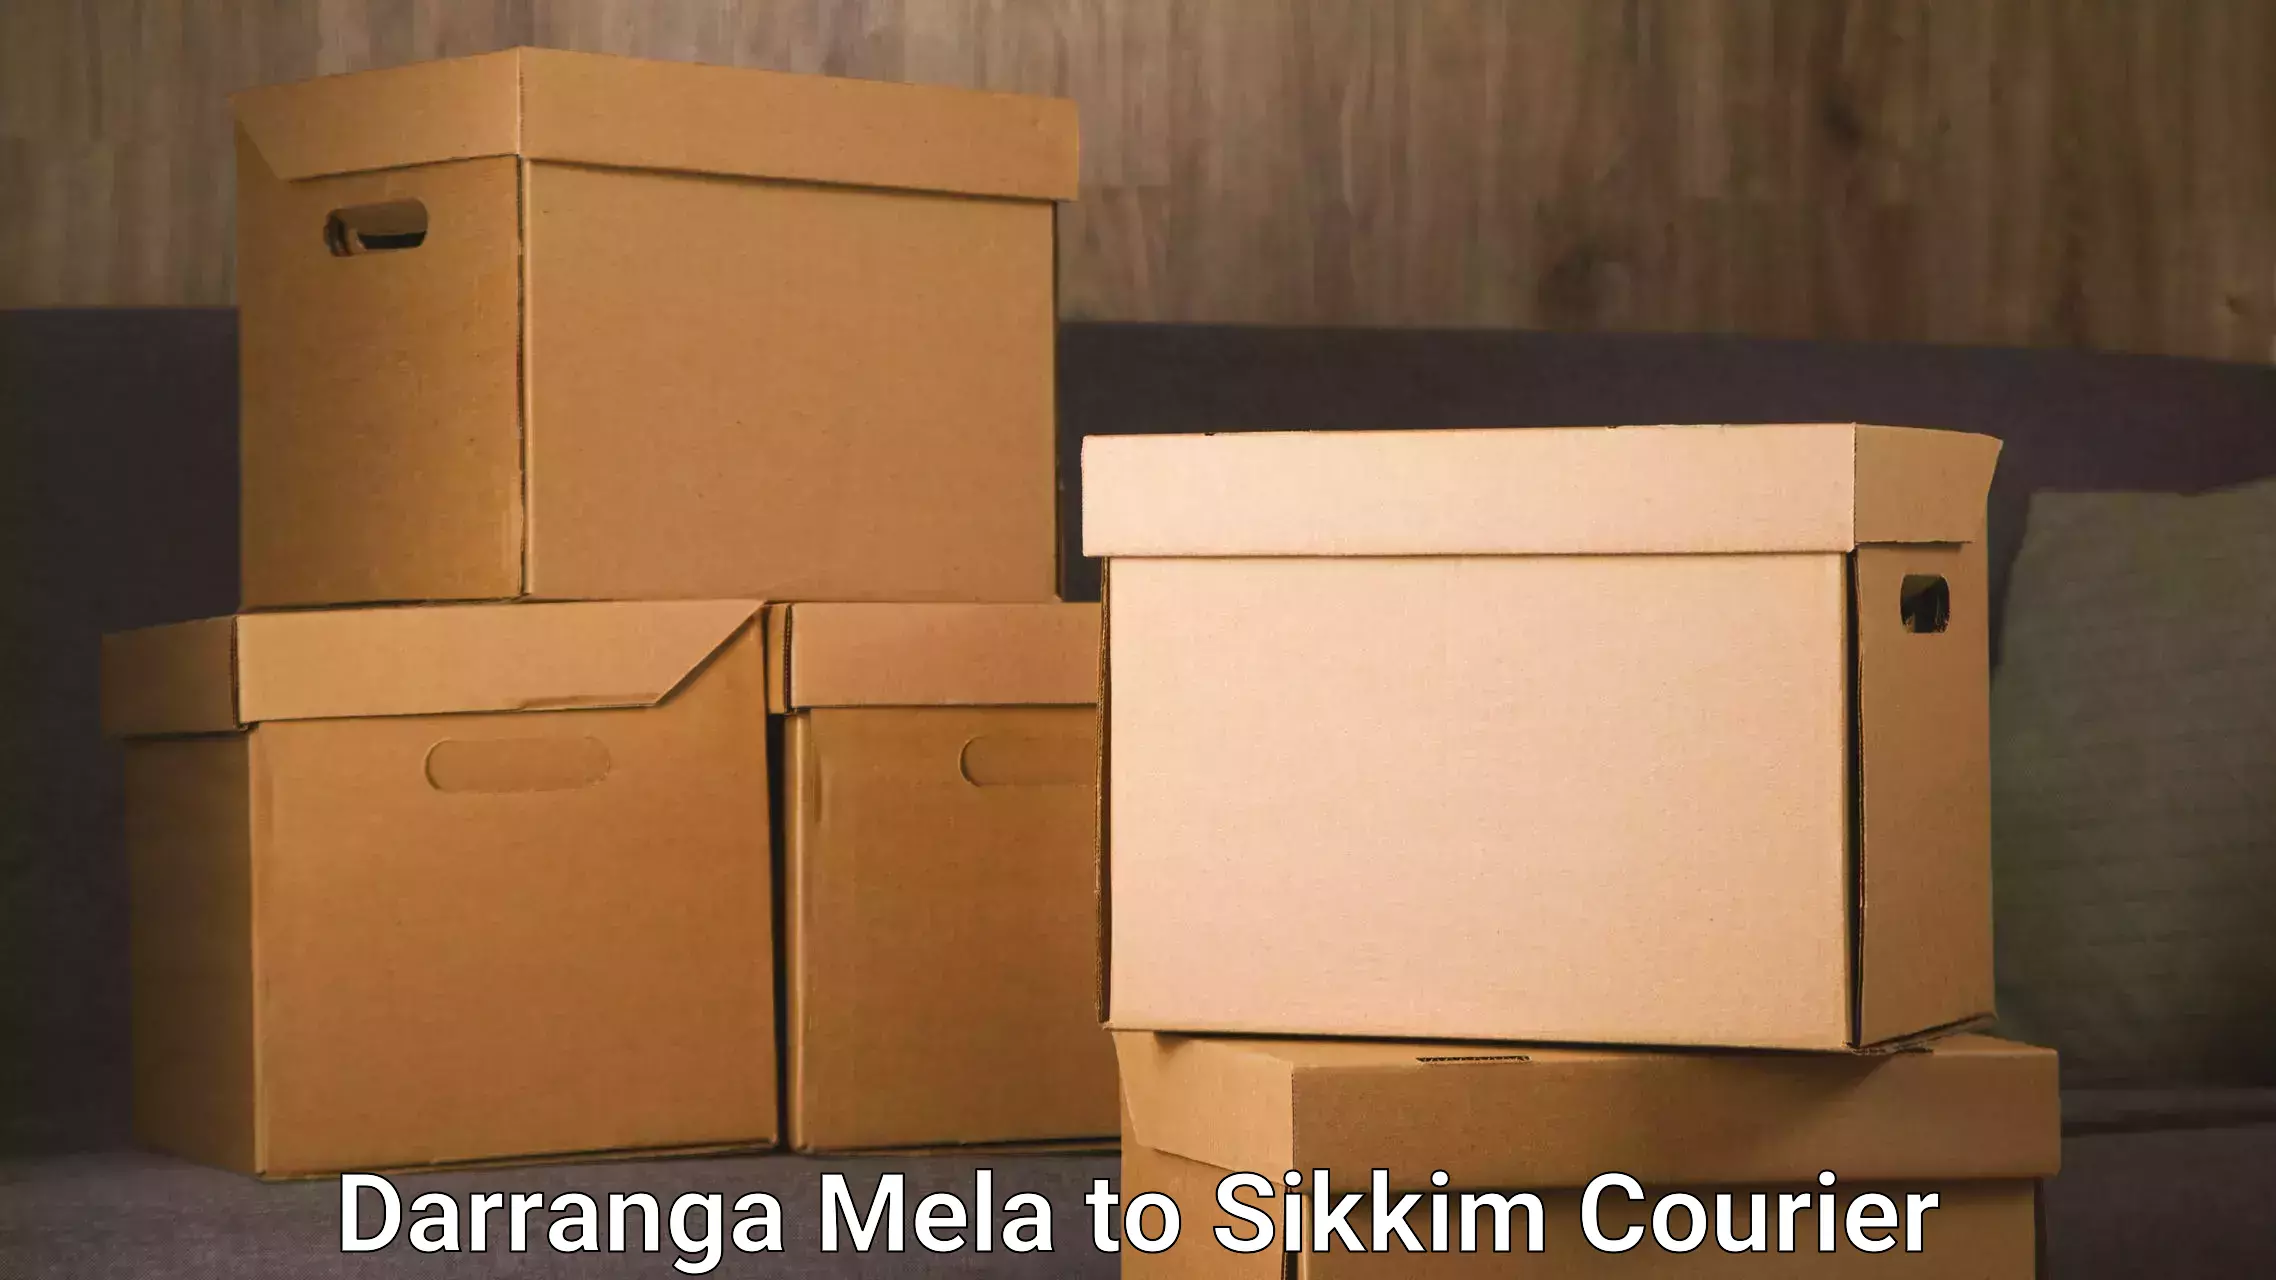 Digital courier platforms Darranga Mela to NIT Sikkim